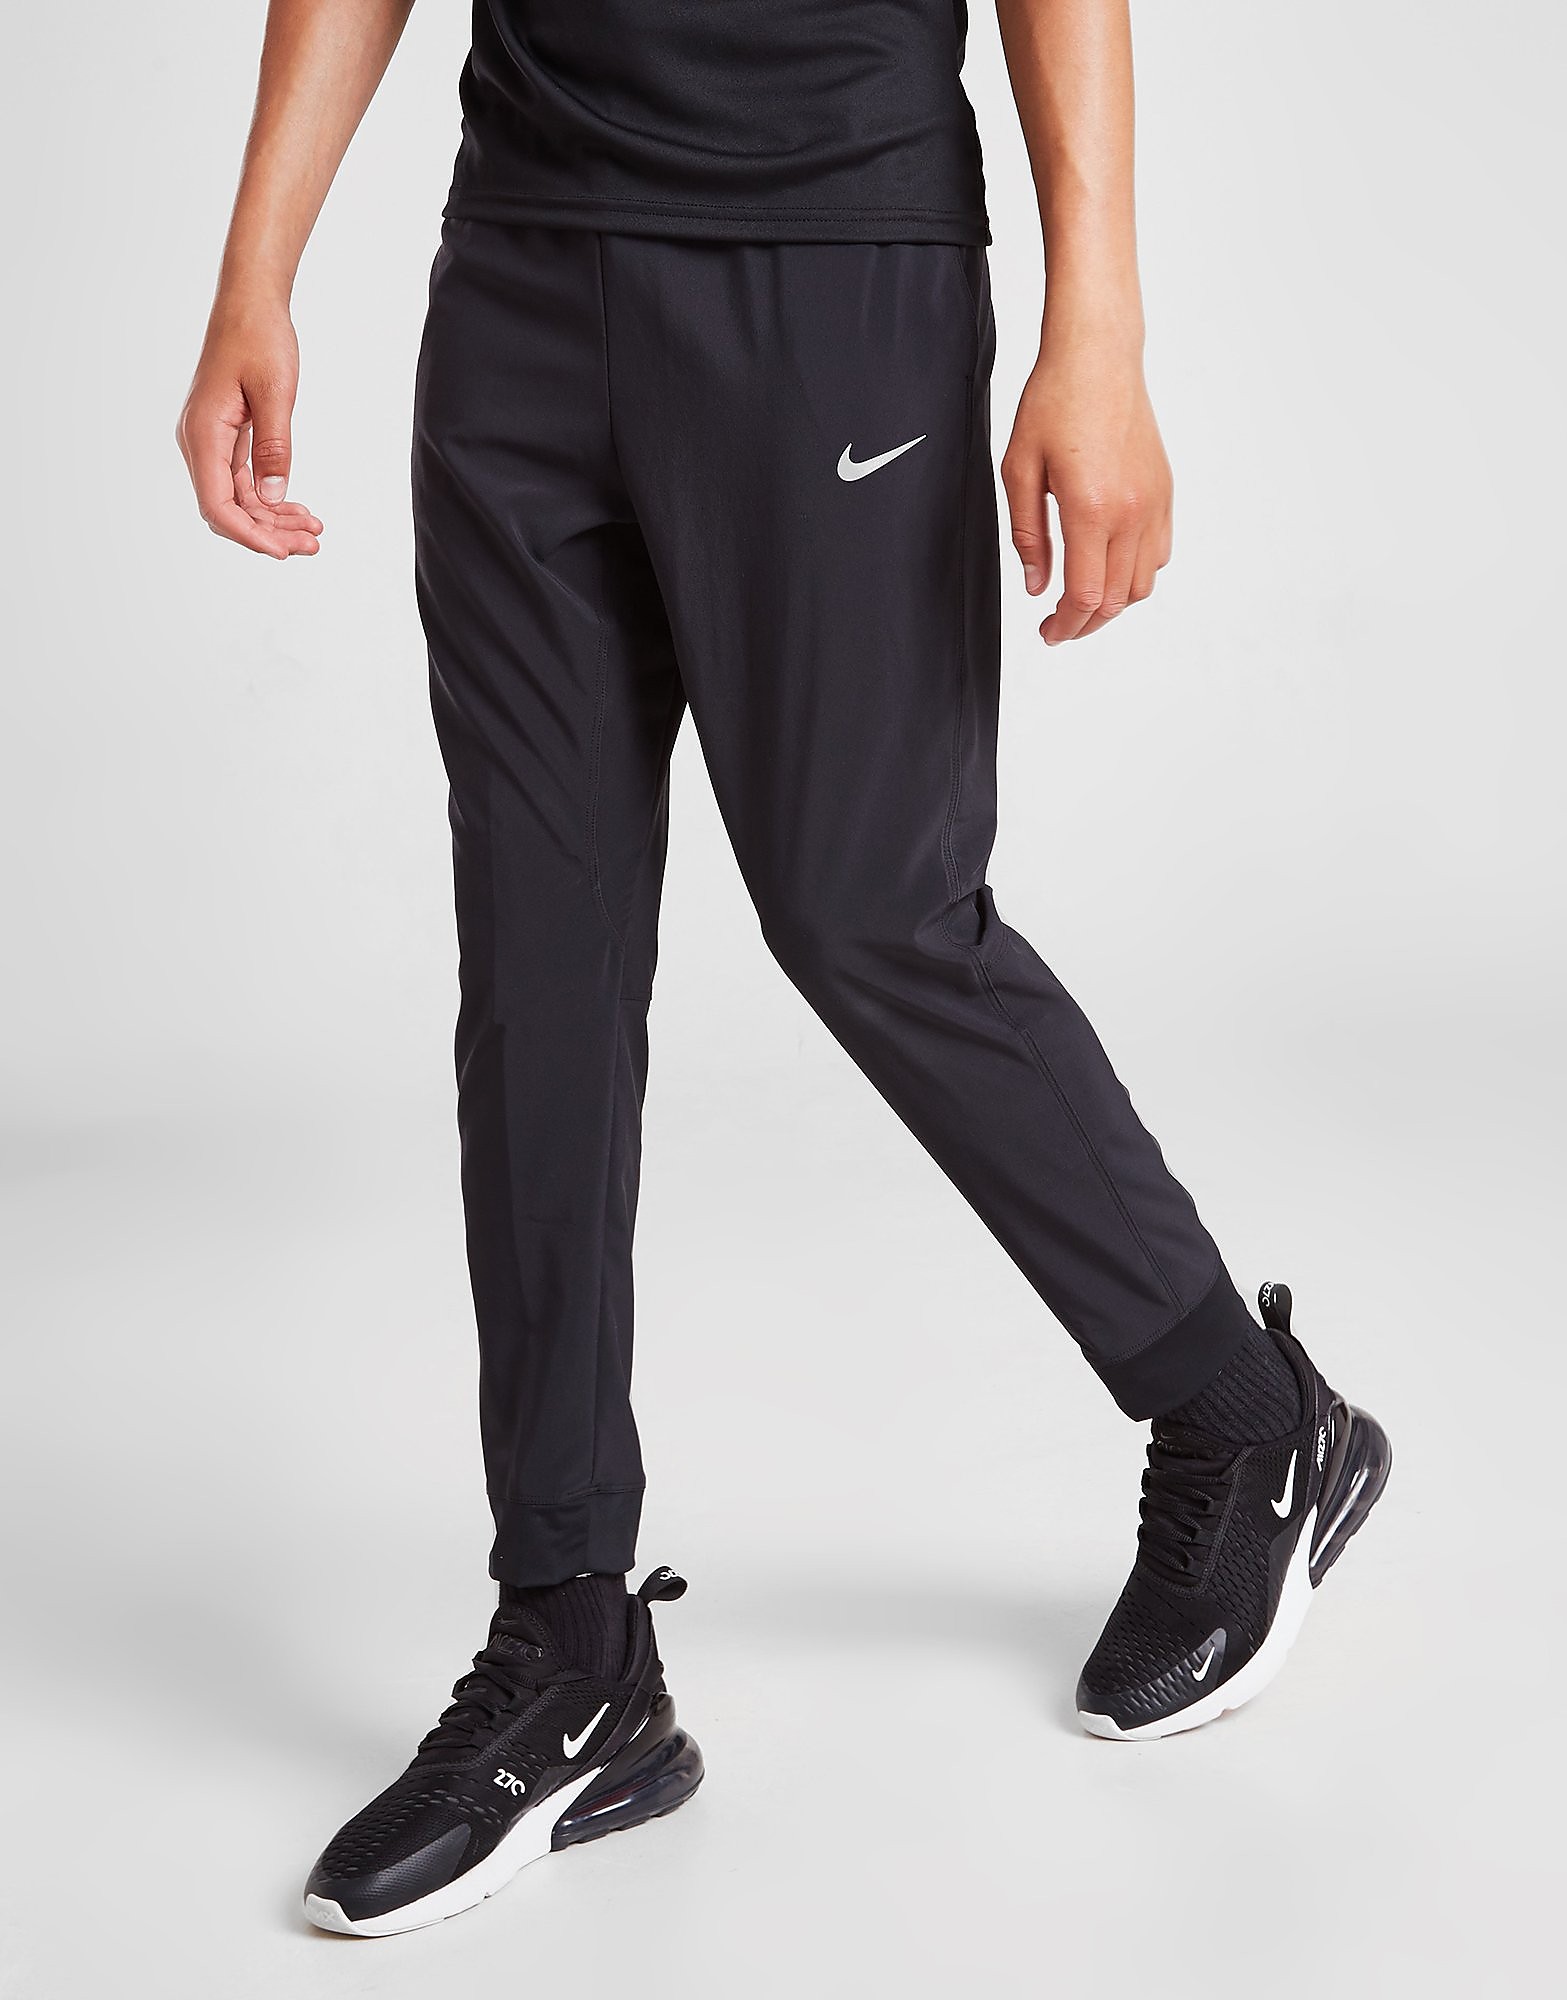 

Nike Dri-FIT Woven Track Pants Junior - Black - Kids, Black